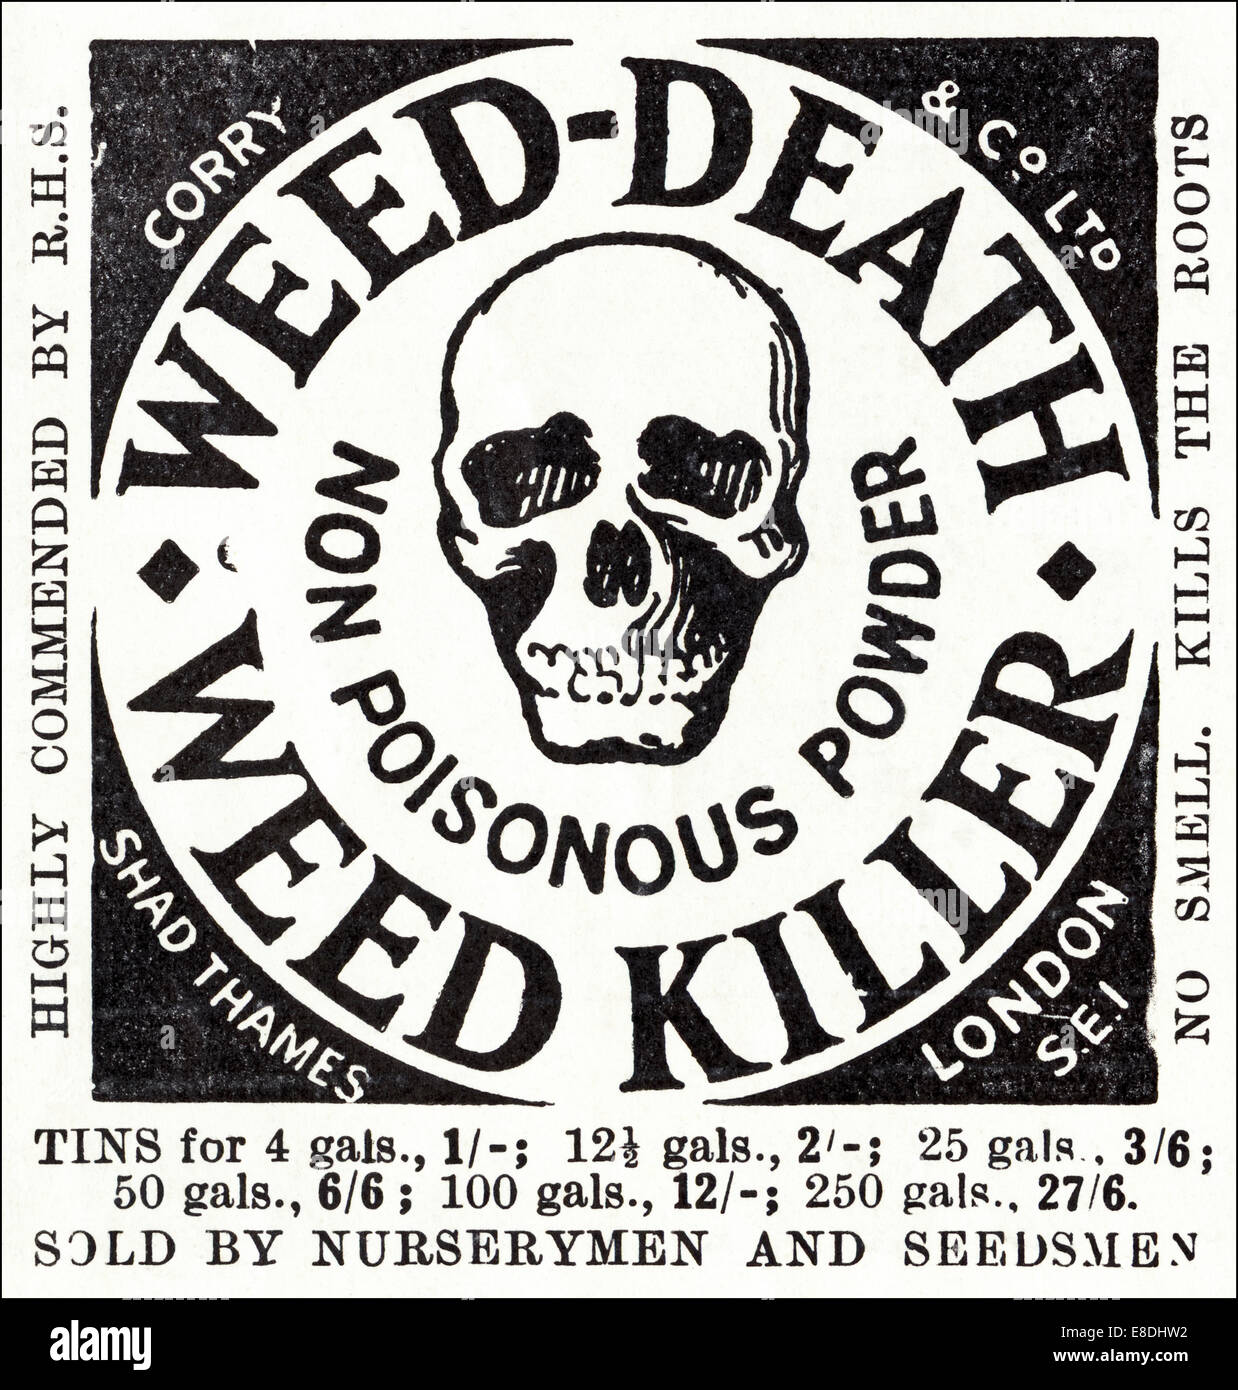 1920 Anuncio para weed killer en inglés magazine, fechado en junio de 1929 Foto de stock